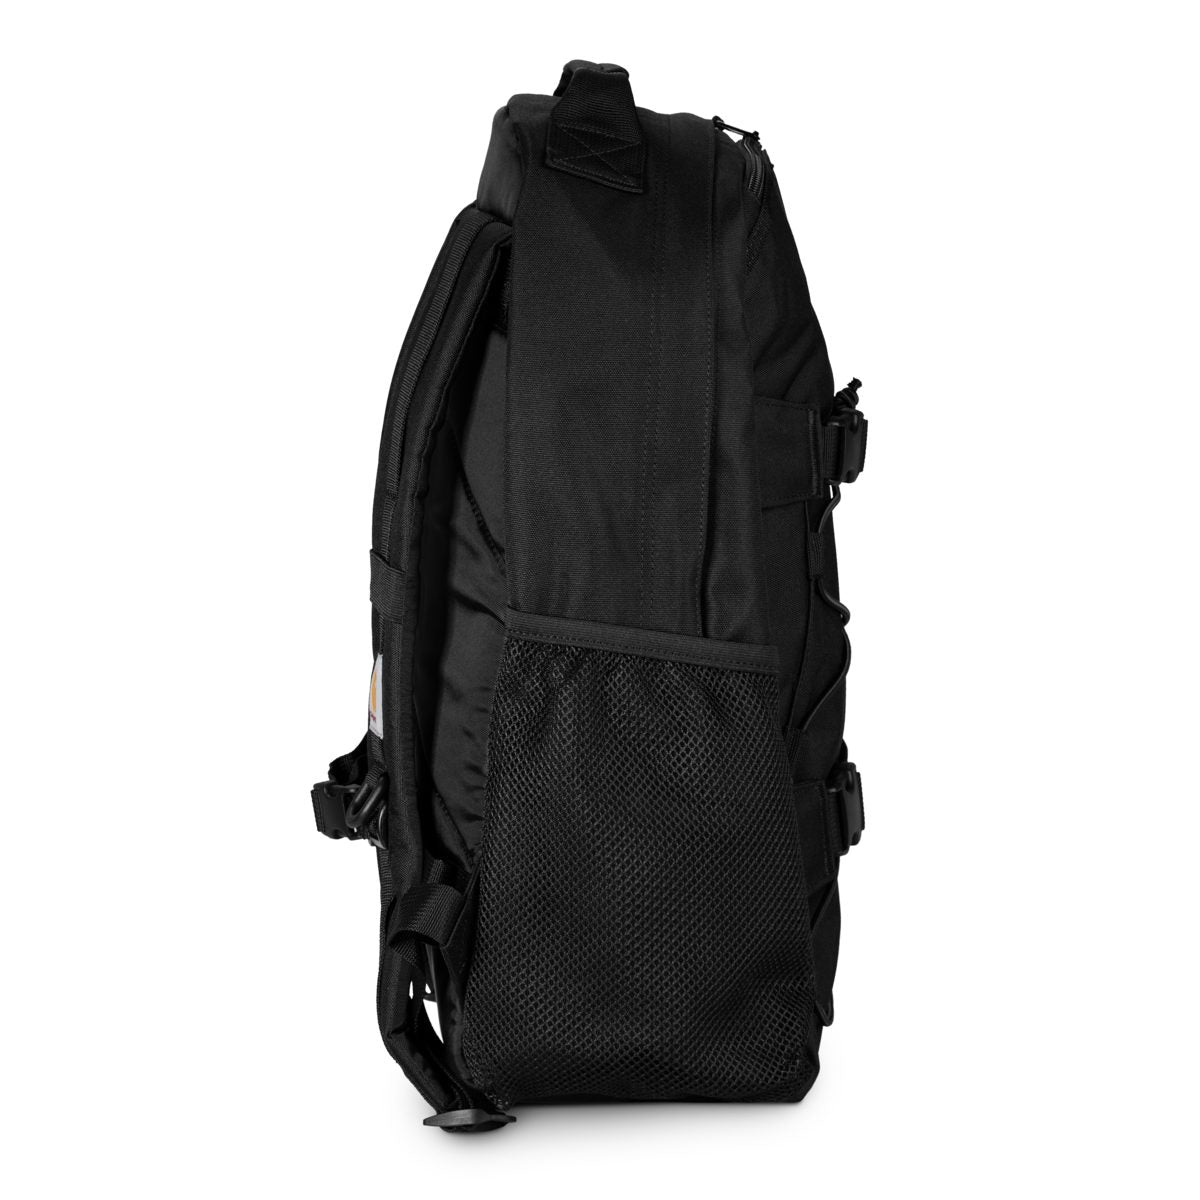 CARHARTT WIP Kickflip Backpack - Black